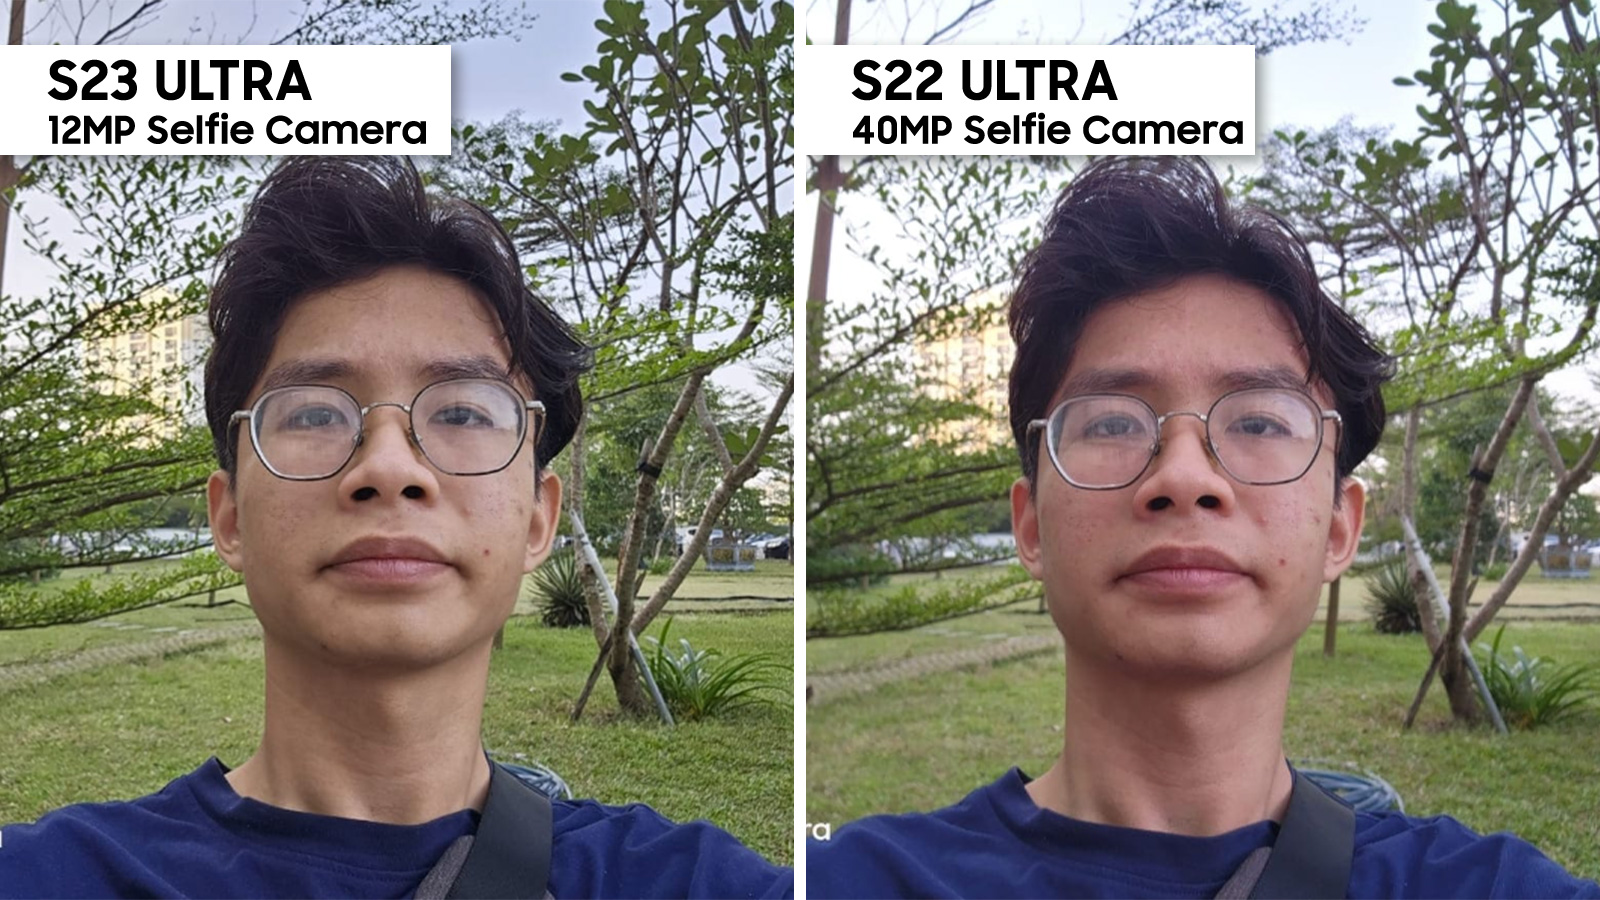 So sánh camera selfie 40MP của Galaxy S22 Ultra và 12MP của S23 Ultra: Samsung giảm độ phân giải, ảnh có xấu hơn?